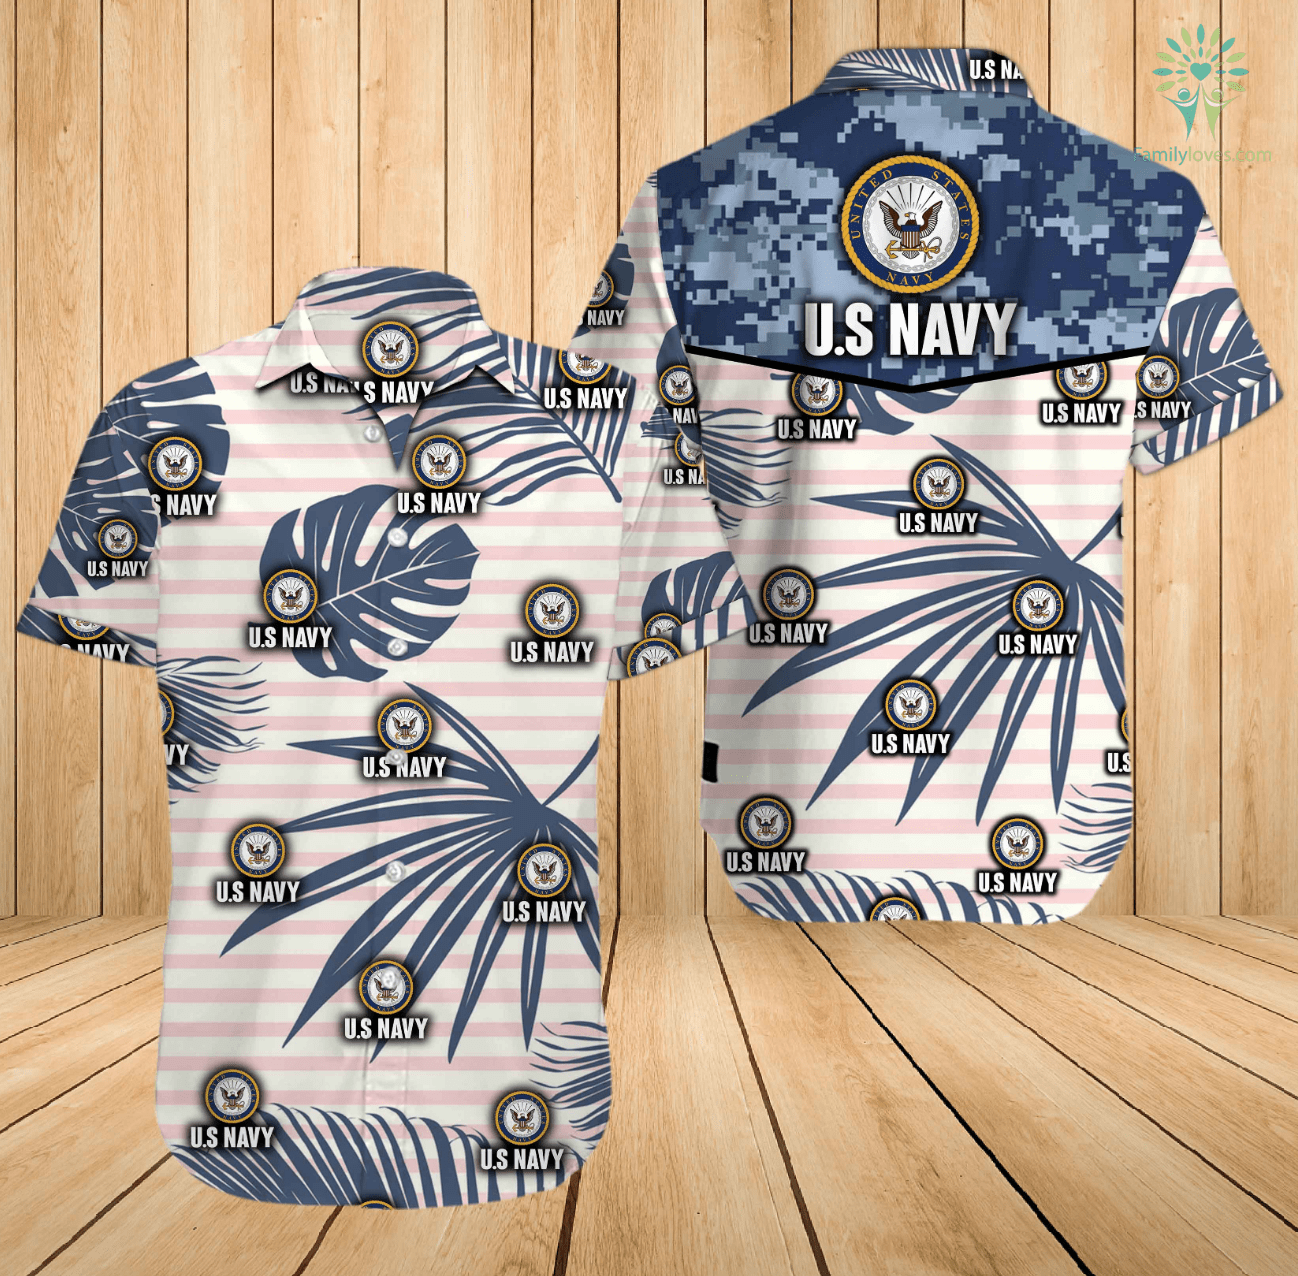 US navy hawaiian shirt and shorts - pic 1